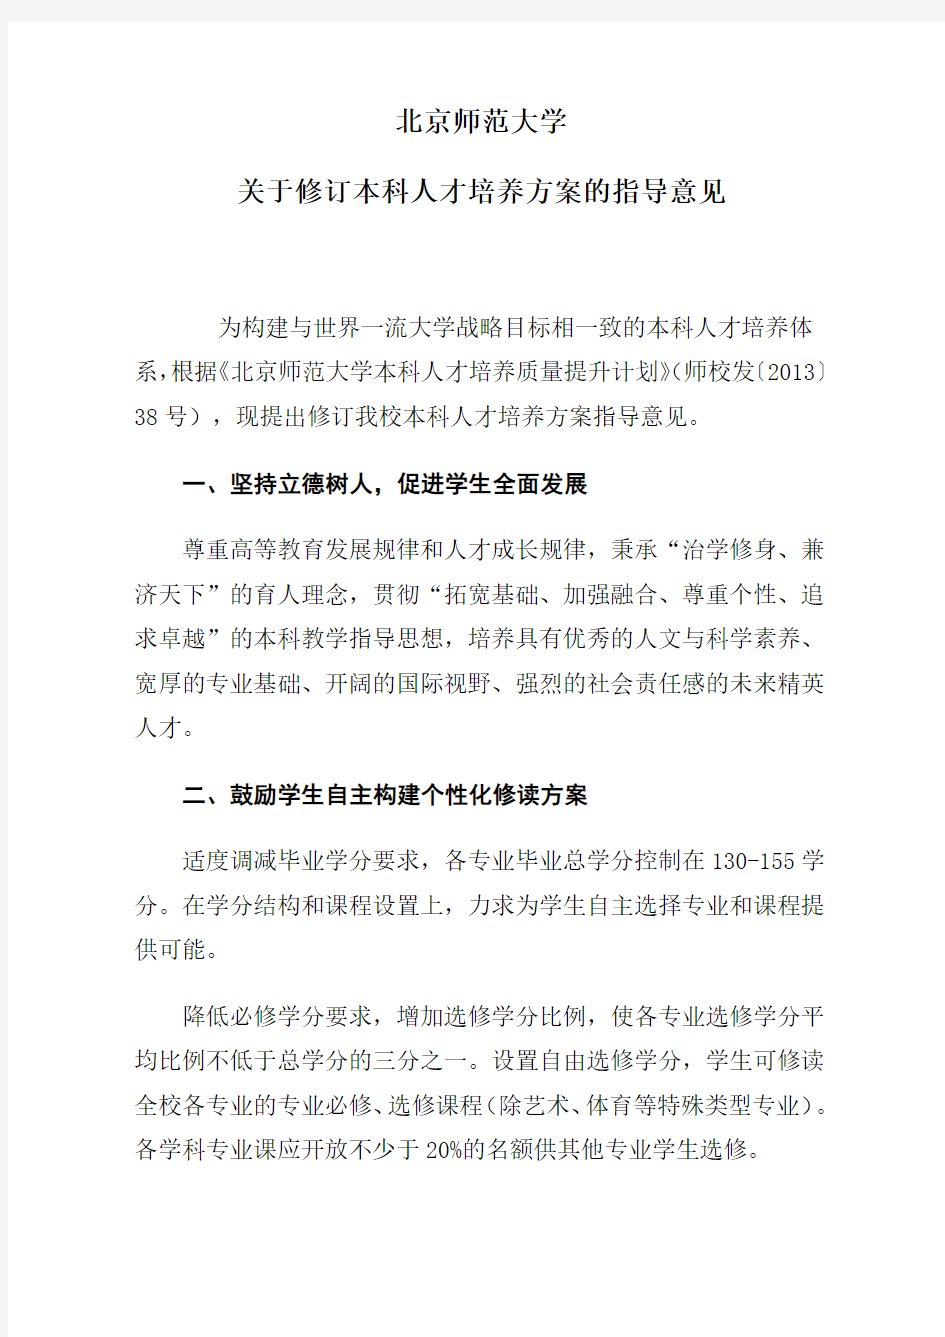 北京师范大学关于修订本科人才培养方案的指导意见